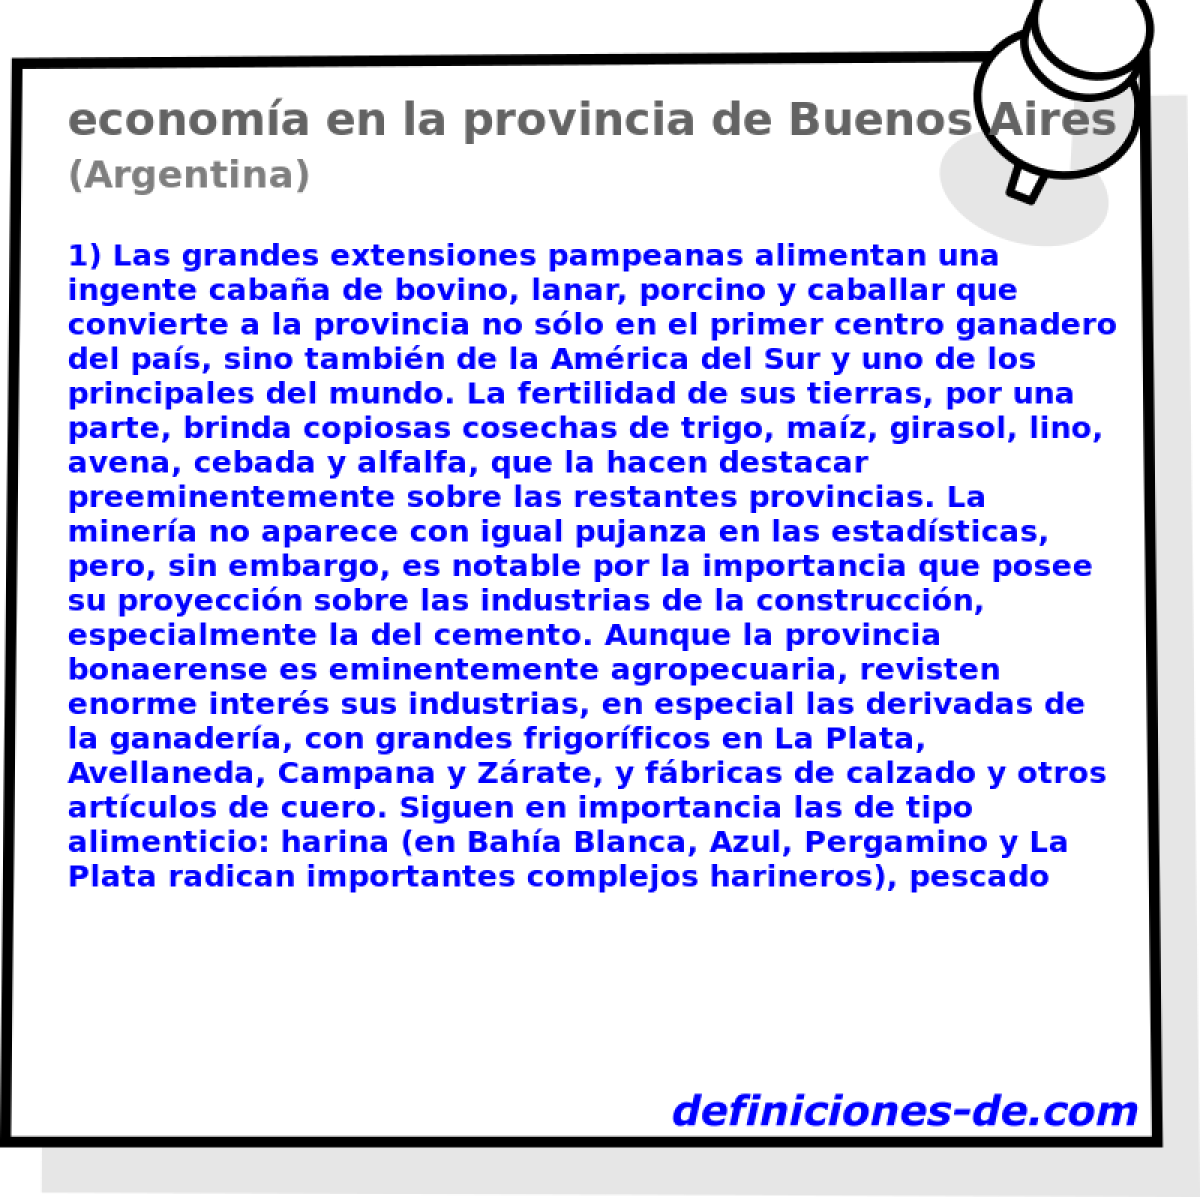 economa en la provincia de Buenos Aires (Argentina)